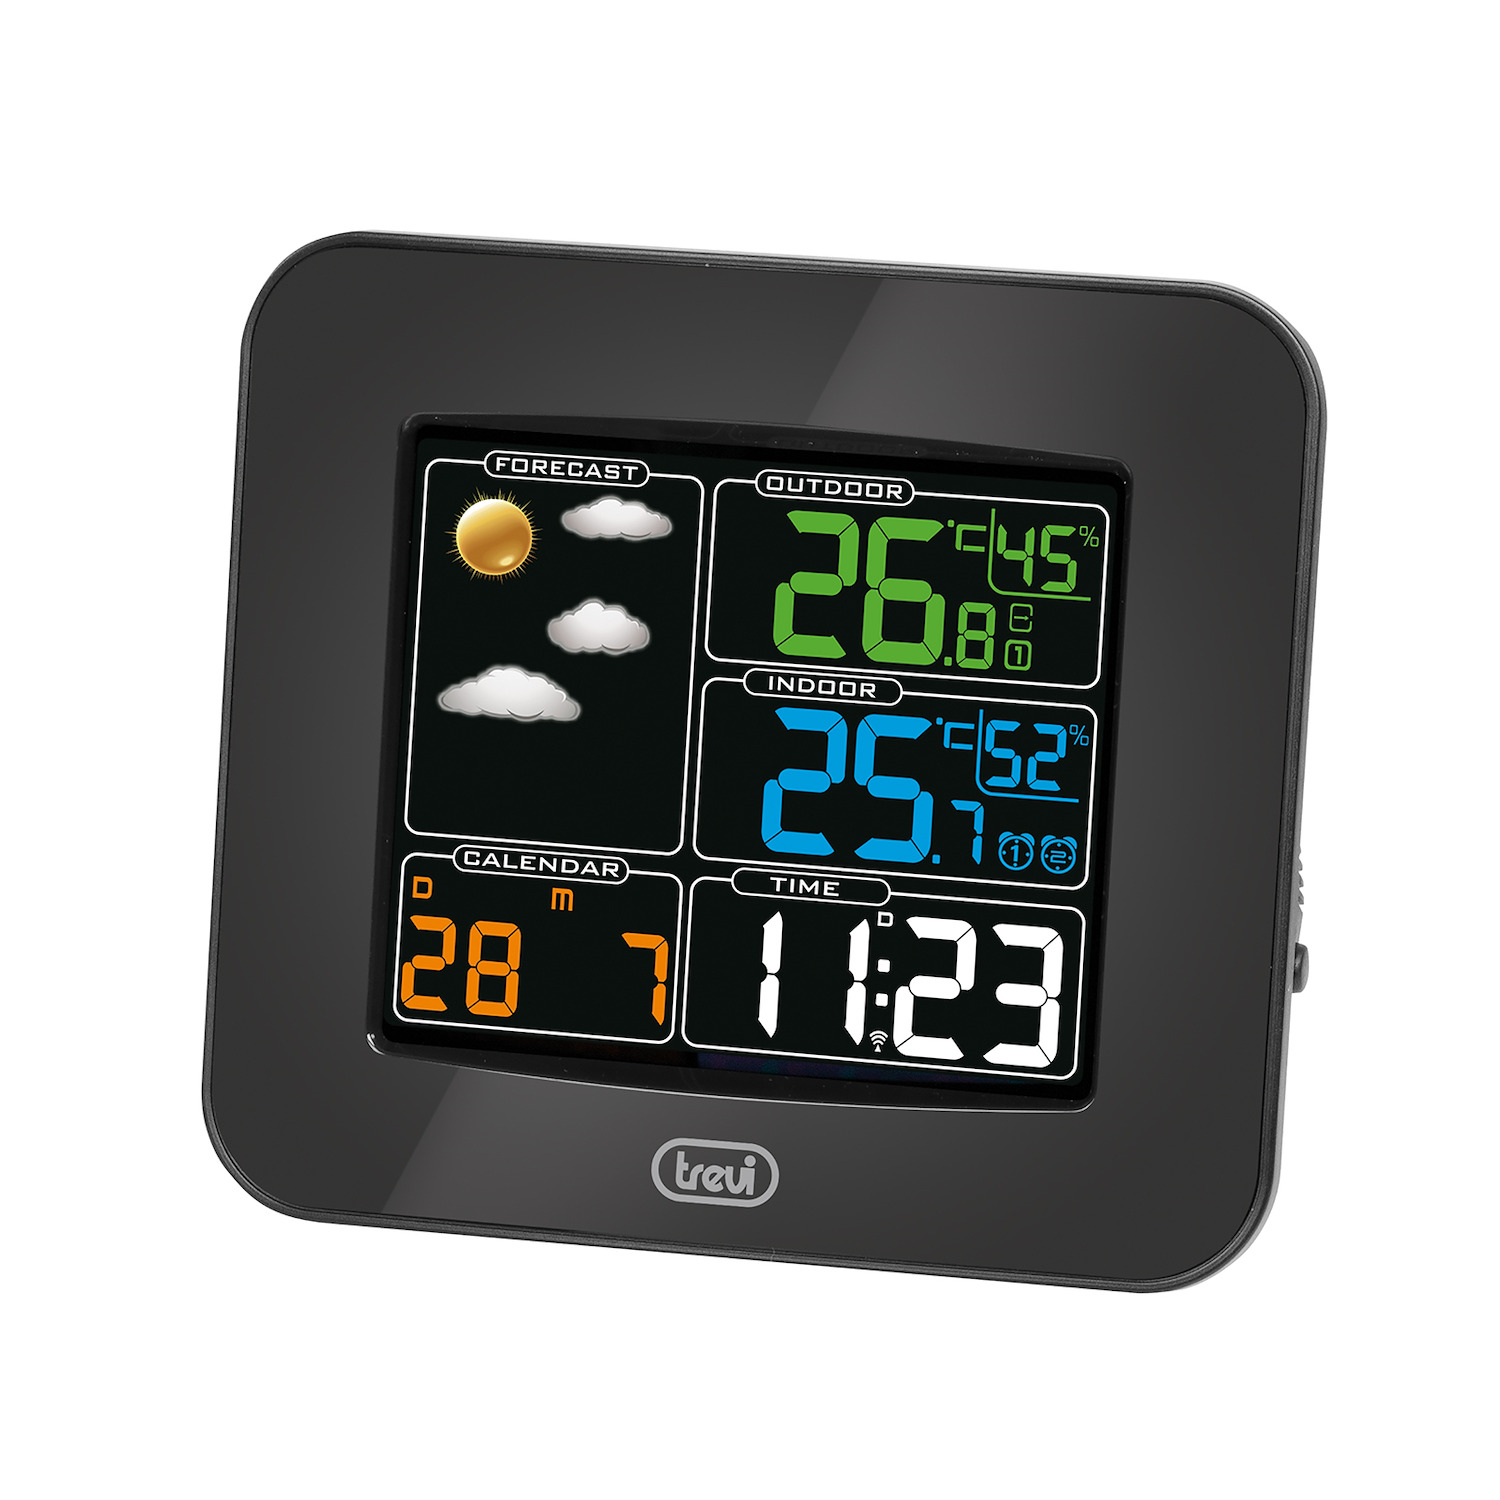 Vosarea orologi stazioni meteo termometro igrometro digitale sveglia con display LED colorato senza batteria 